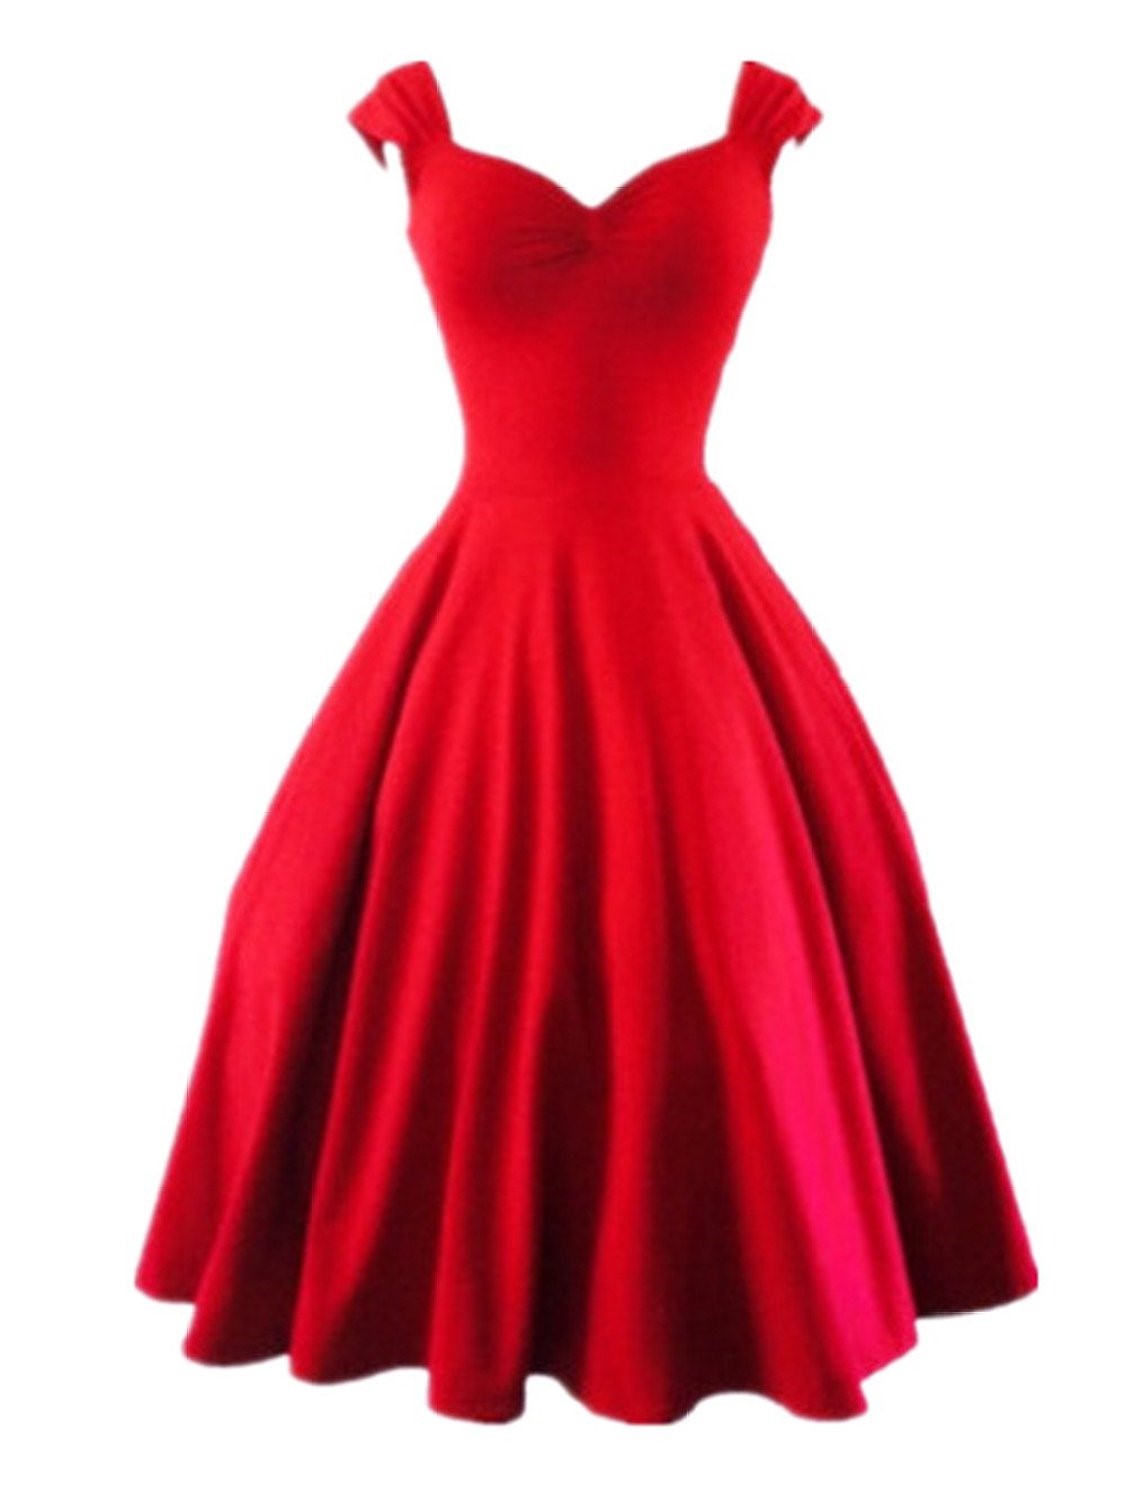 Rotes Kleid zu einem schmutzig schwarzem Rot färben ...